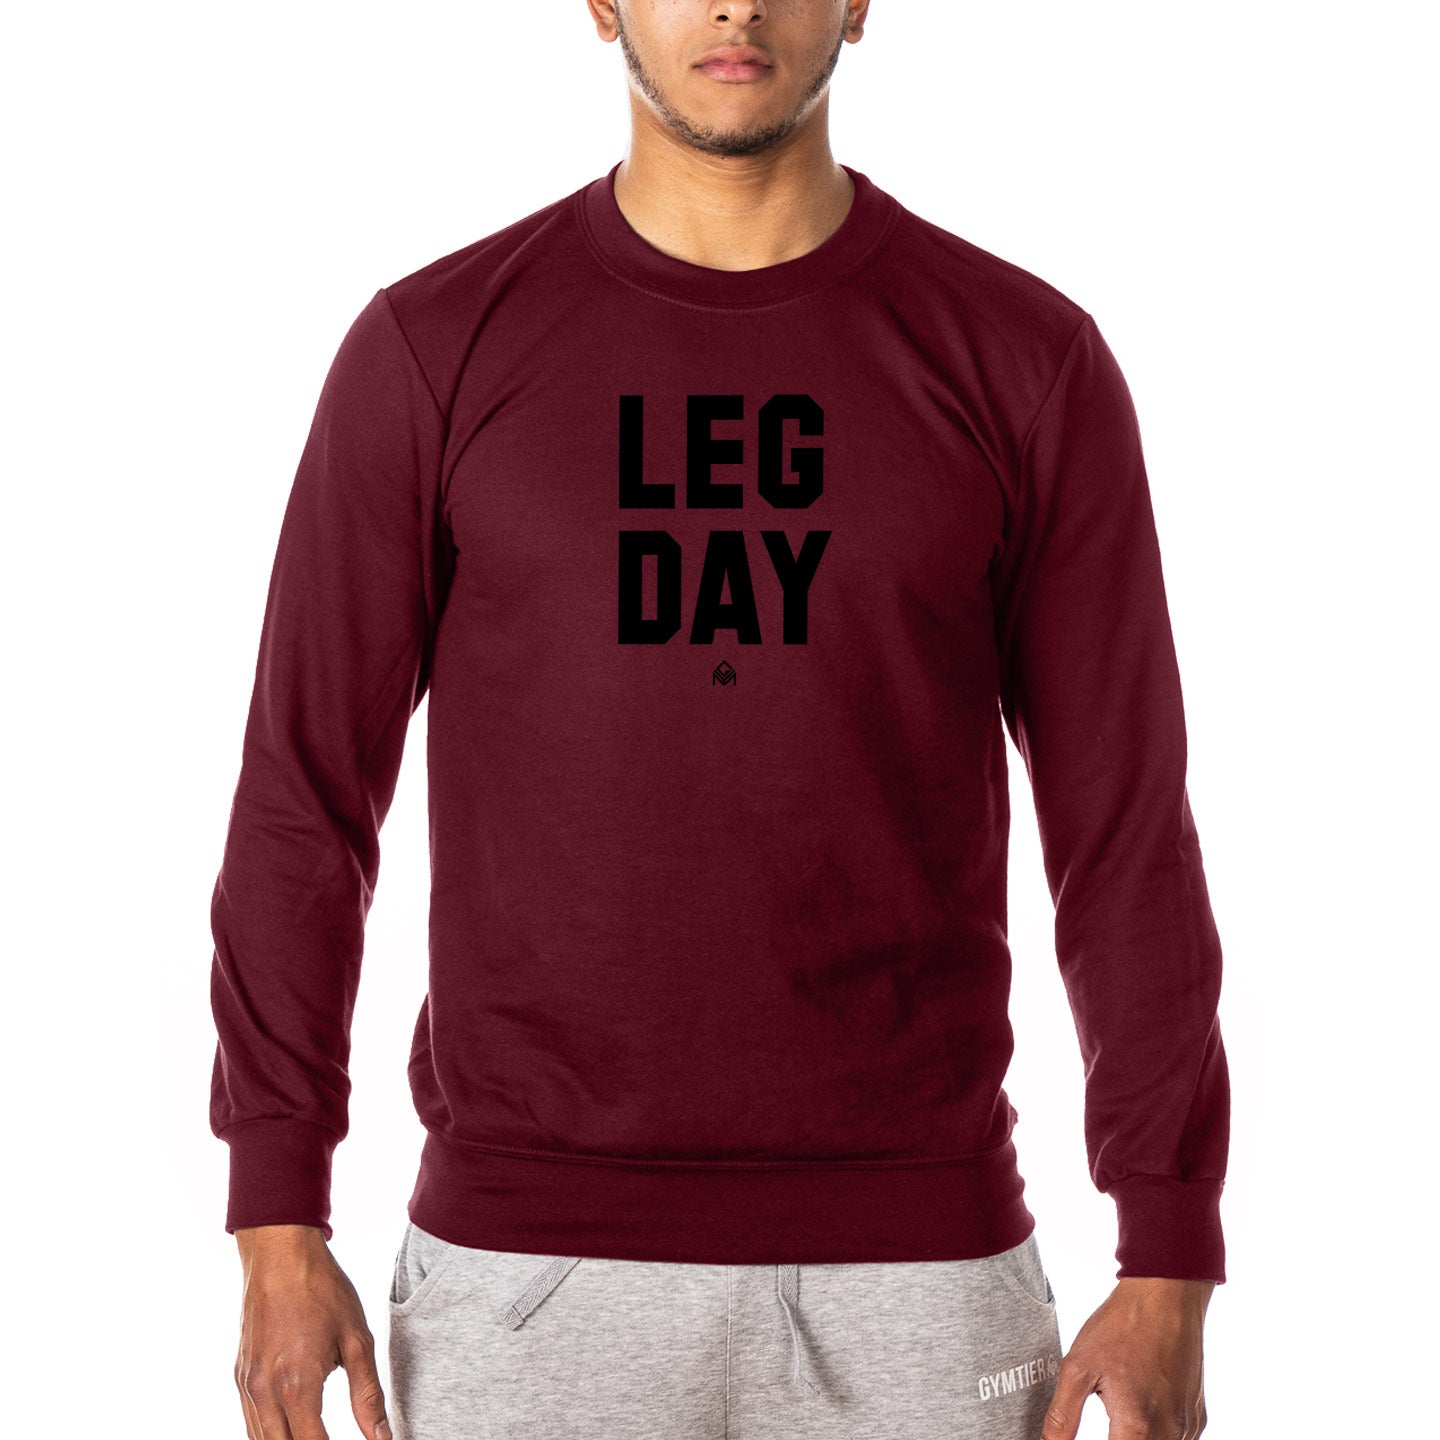 Leg Day - Gym Sweatshirt